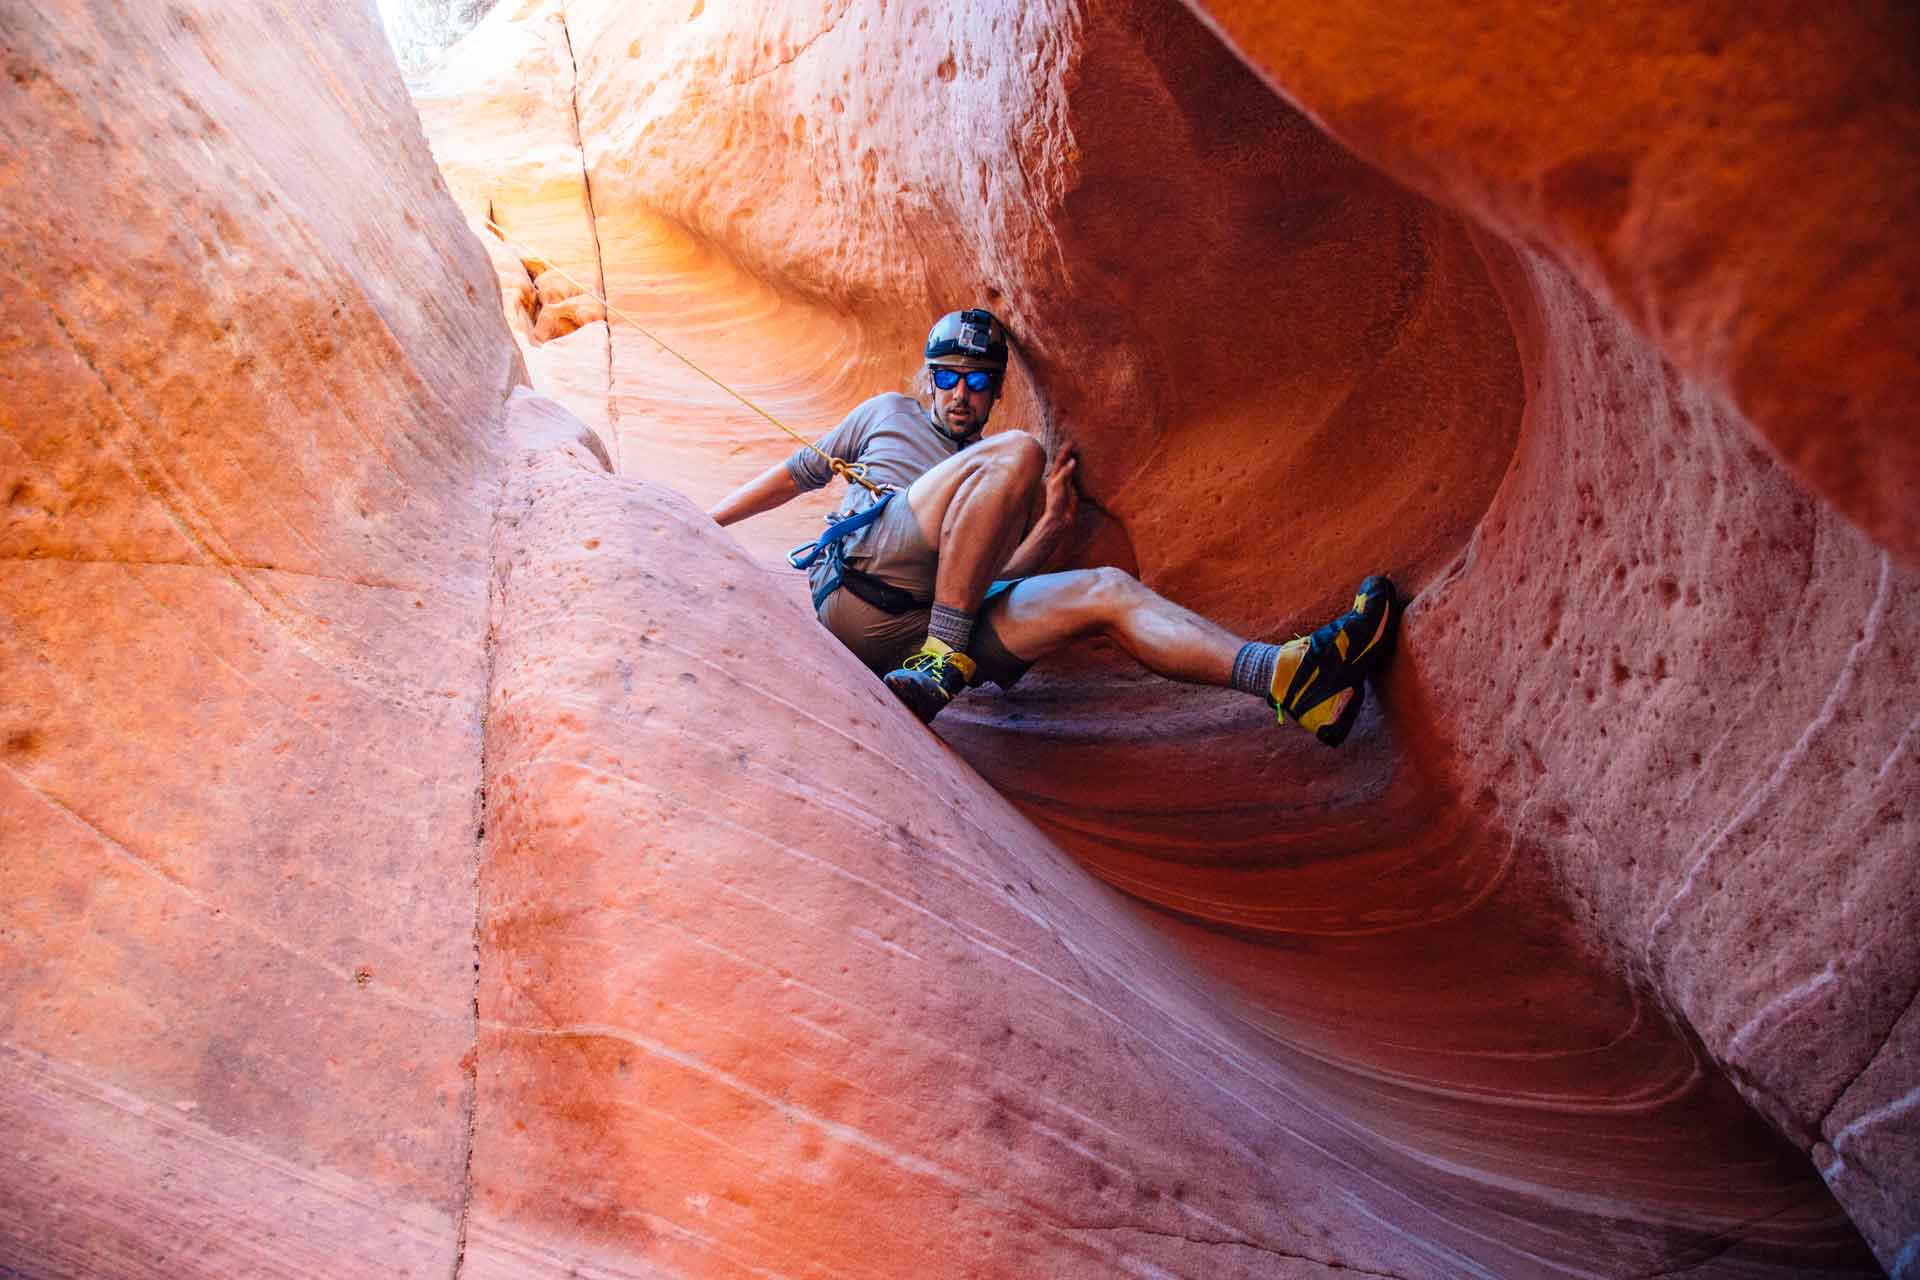 Michael down climbing into a slot canyon